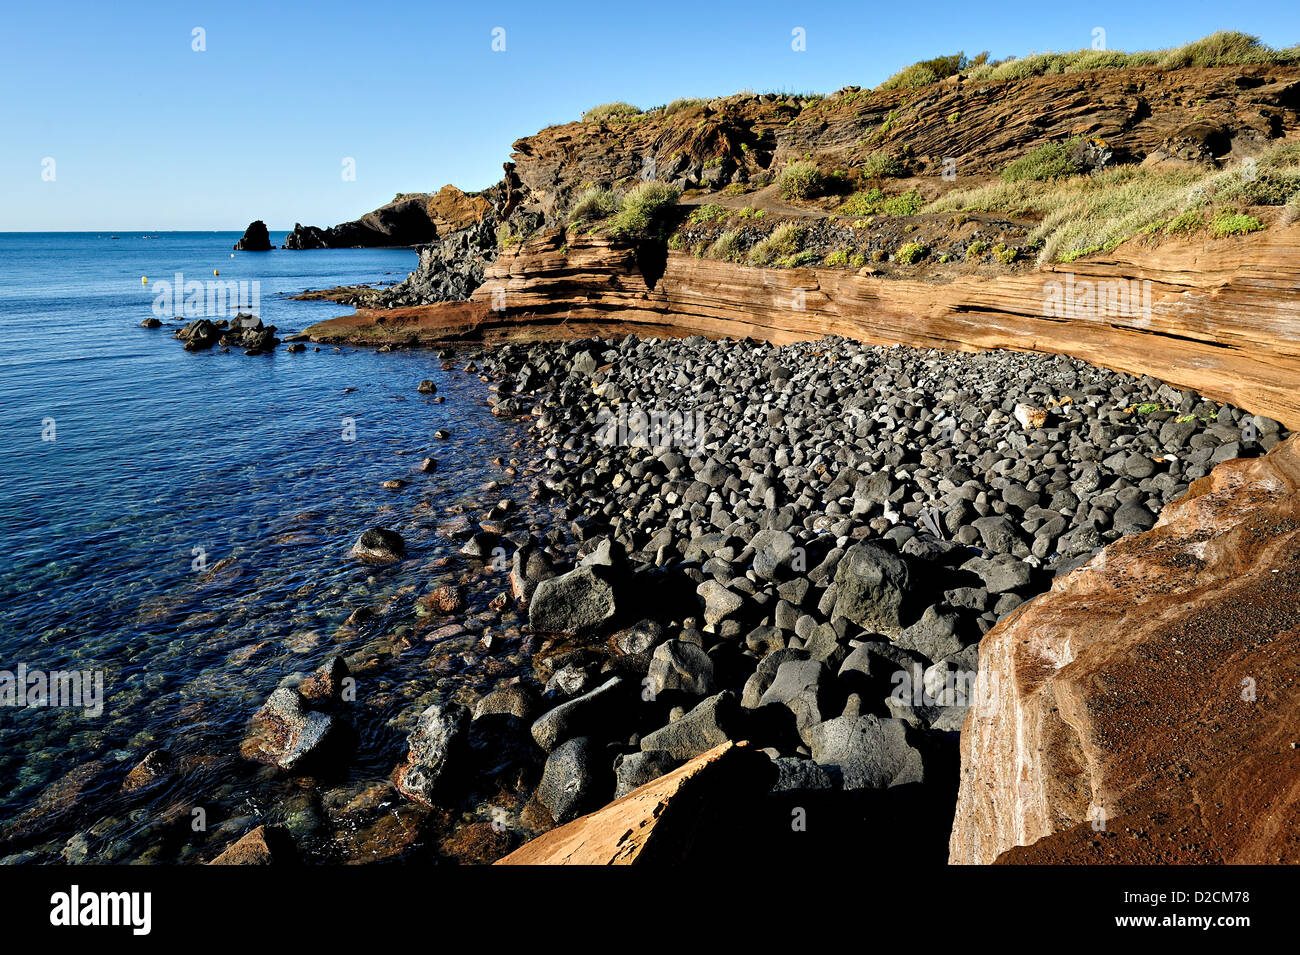 The coast near Cap d'Agde, France. Stock Photo